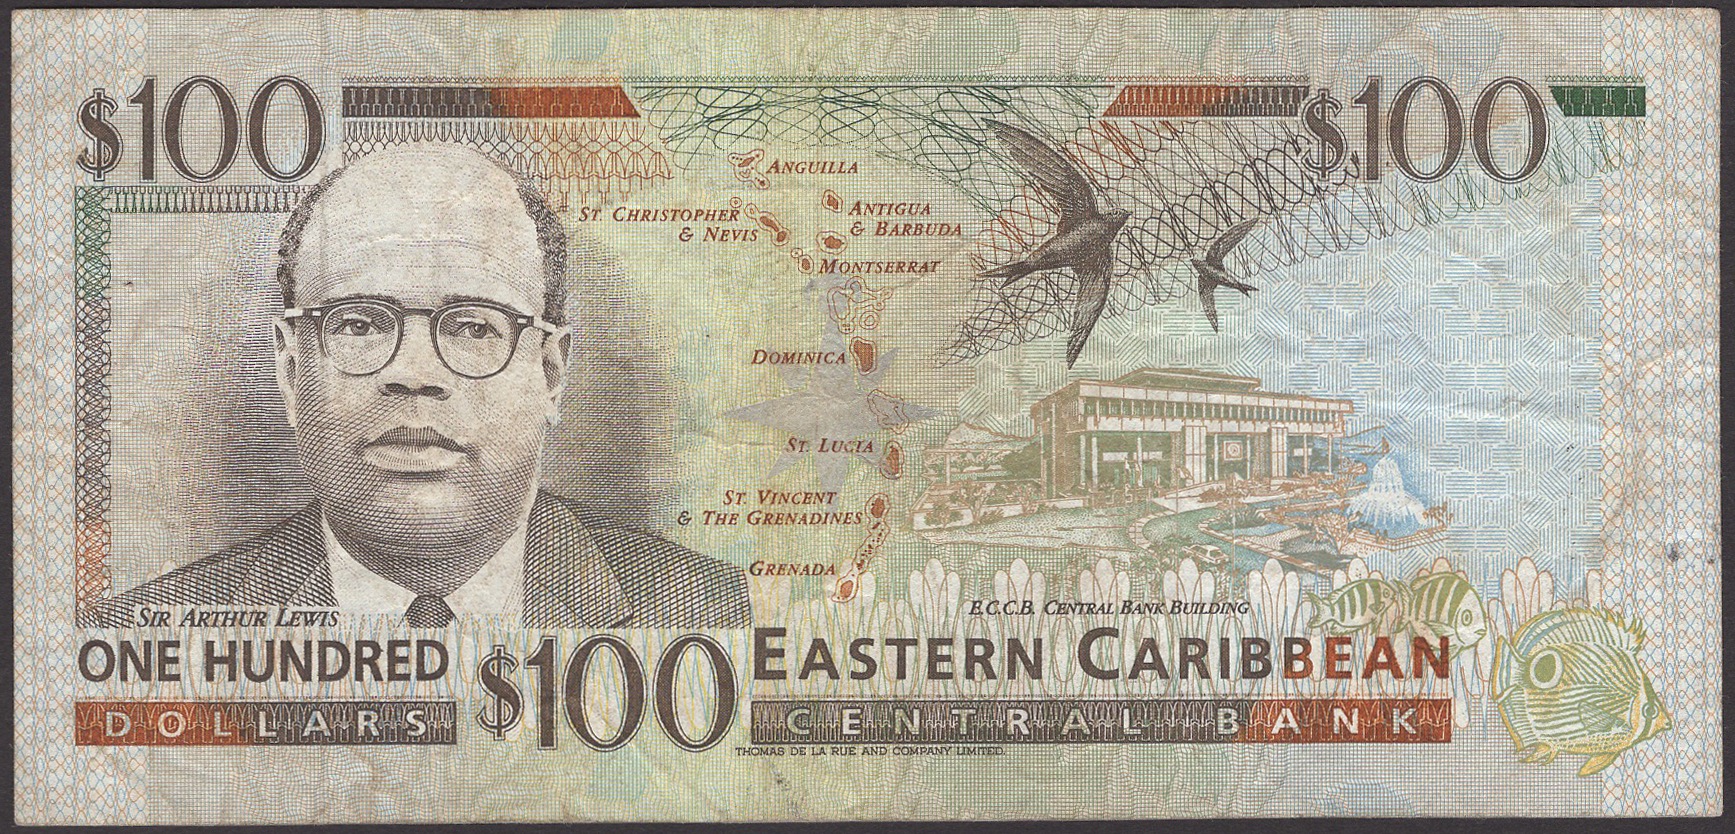 Eastern Caribbean Central Bank, $100, ND (1994), serial number A231607 V (St Vincent),... - Image 2 of 2